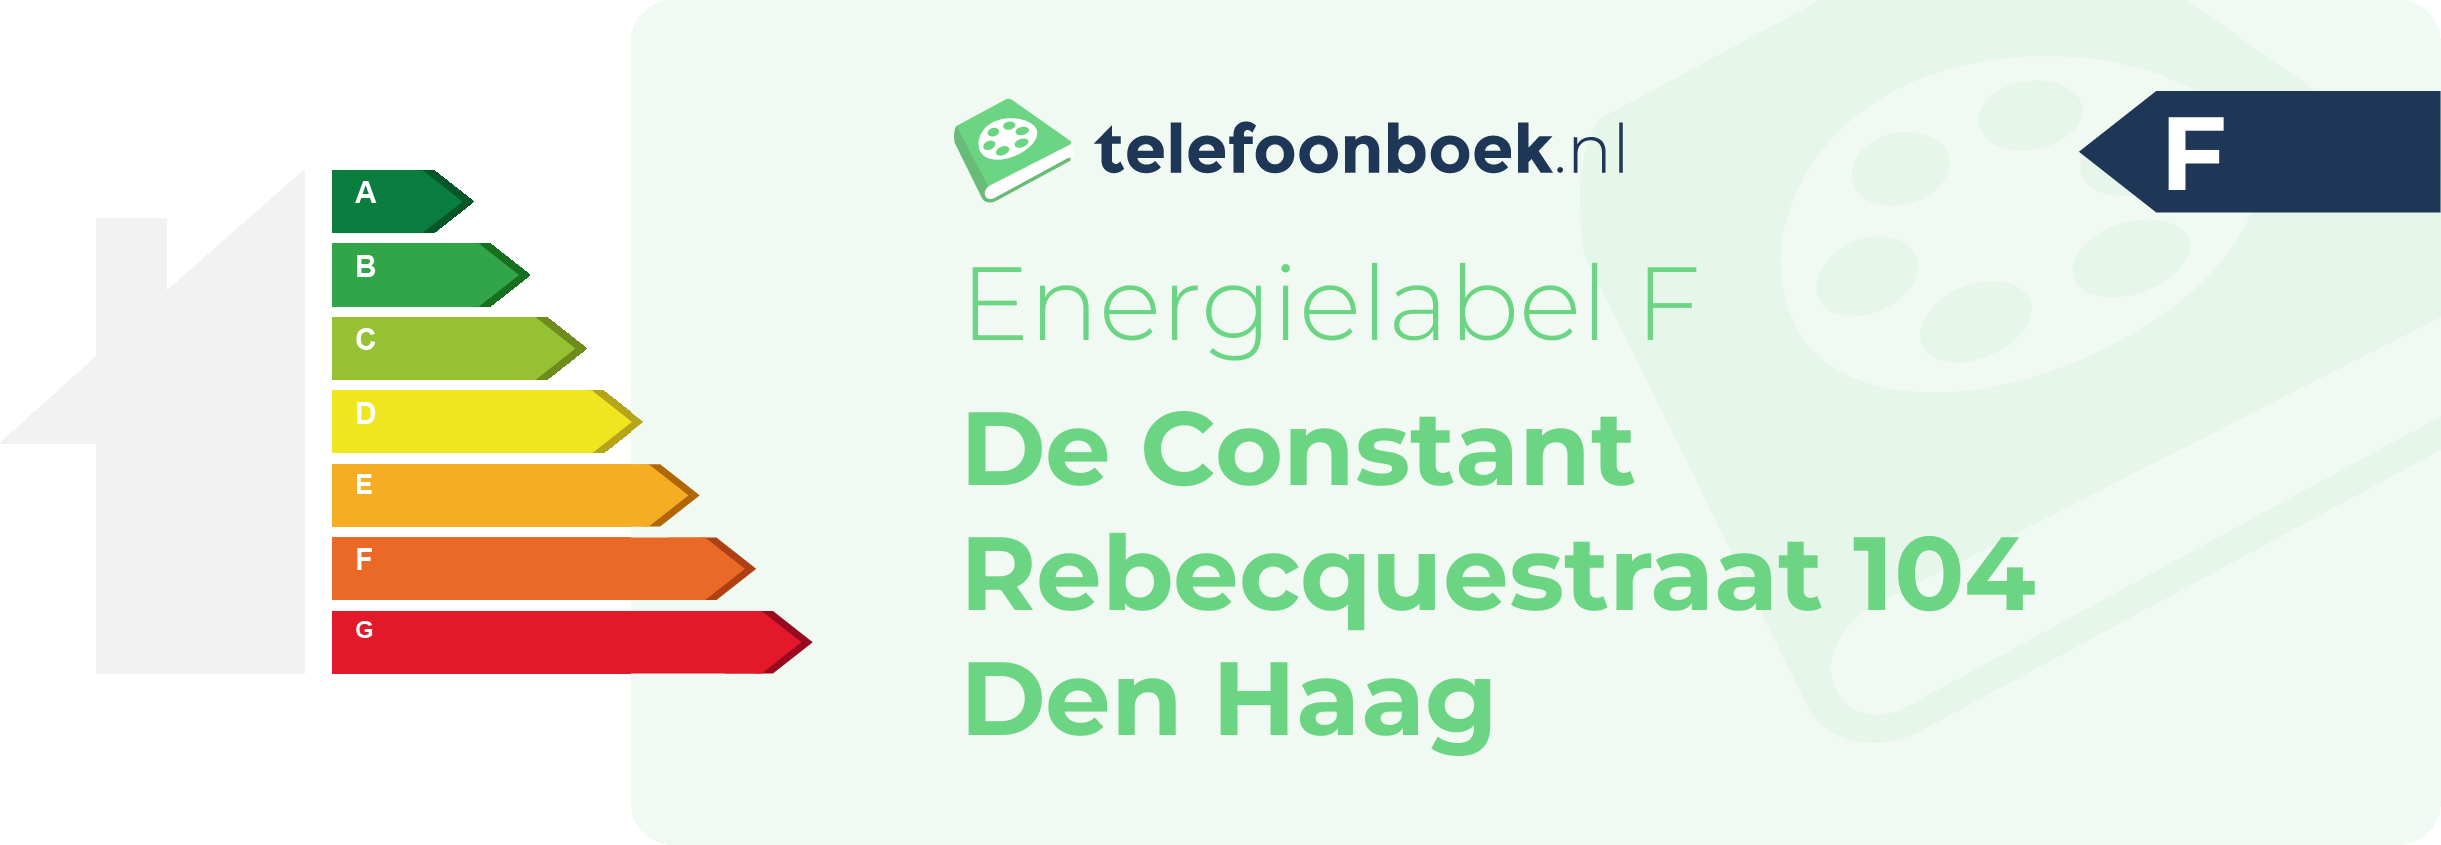 Energielabel De Constant Rebecquestraat 104 Den Haag